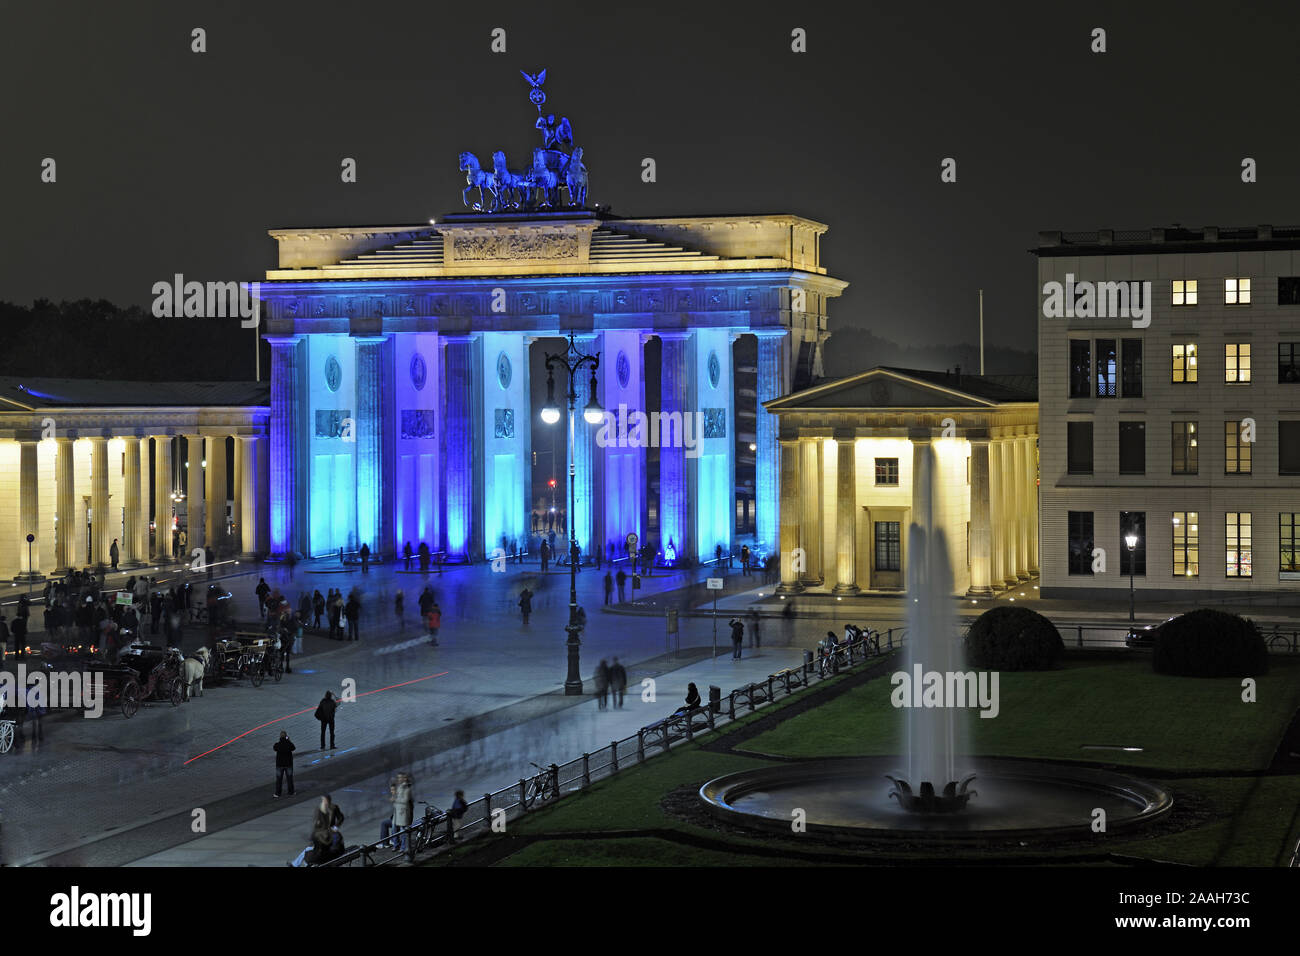 Brandenburger Tor am Pariser Platz, Berlin, Deutschland, Europa, illuminiert zum festa delle luci 2009 Foto Stock